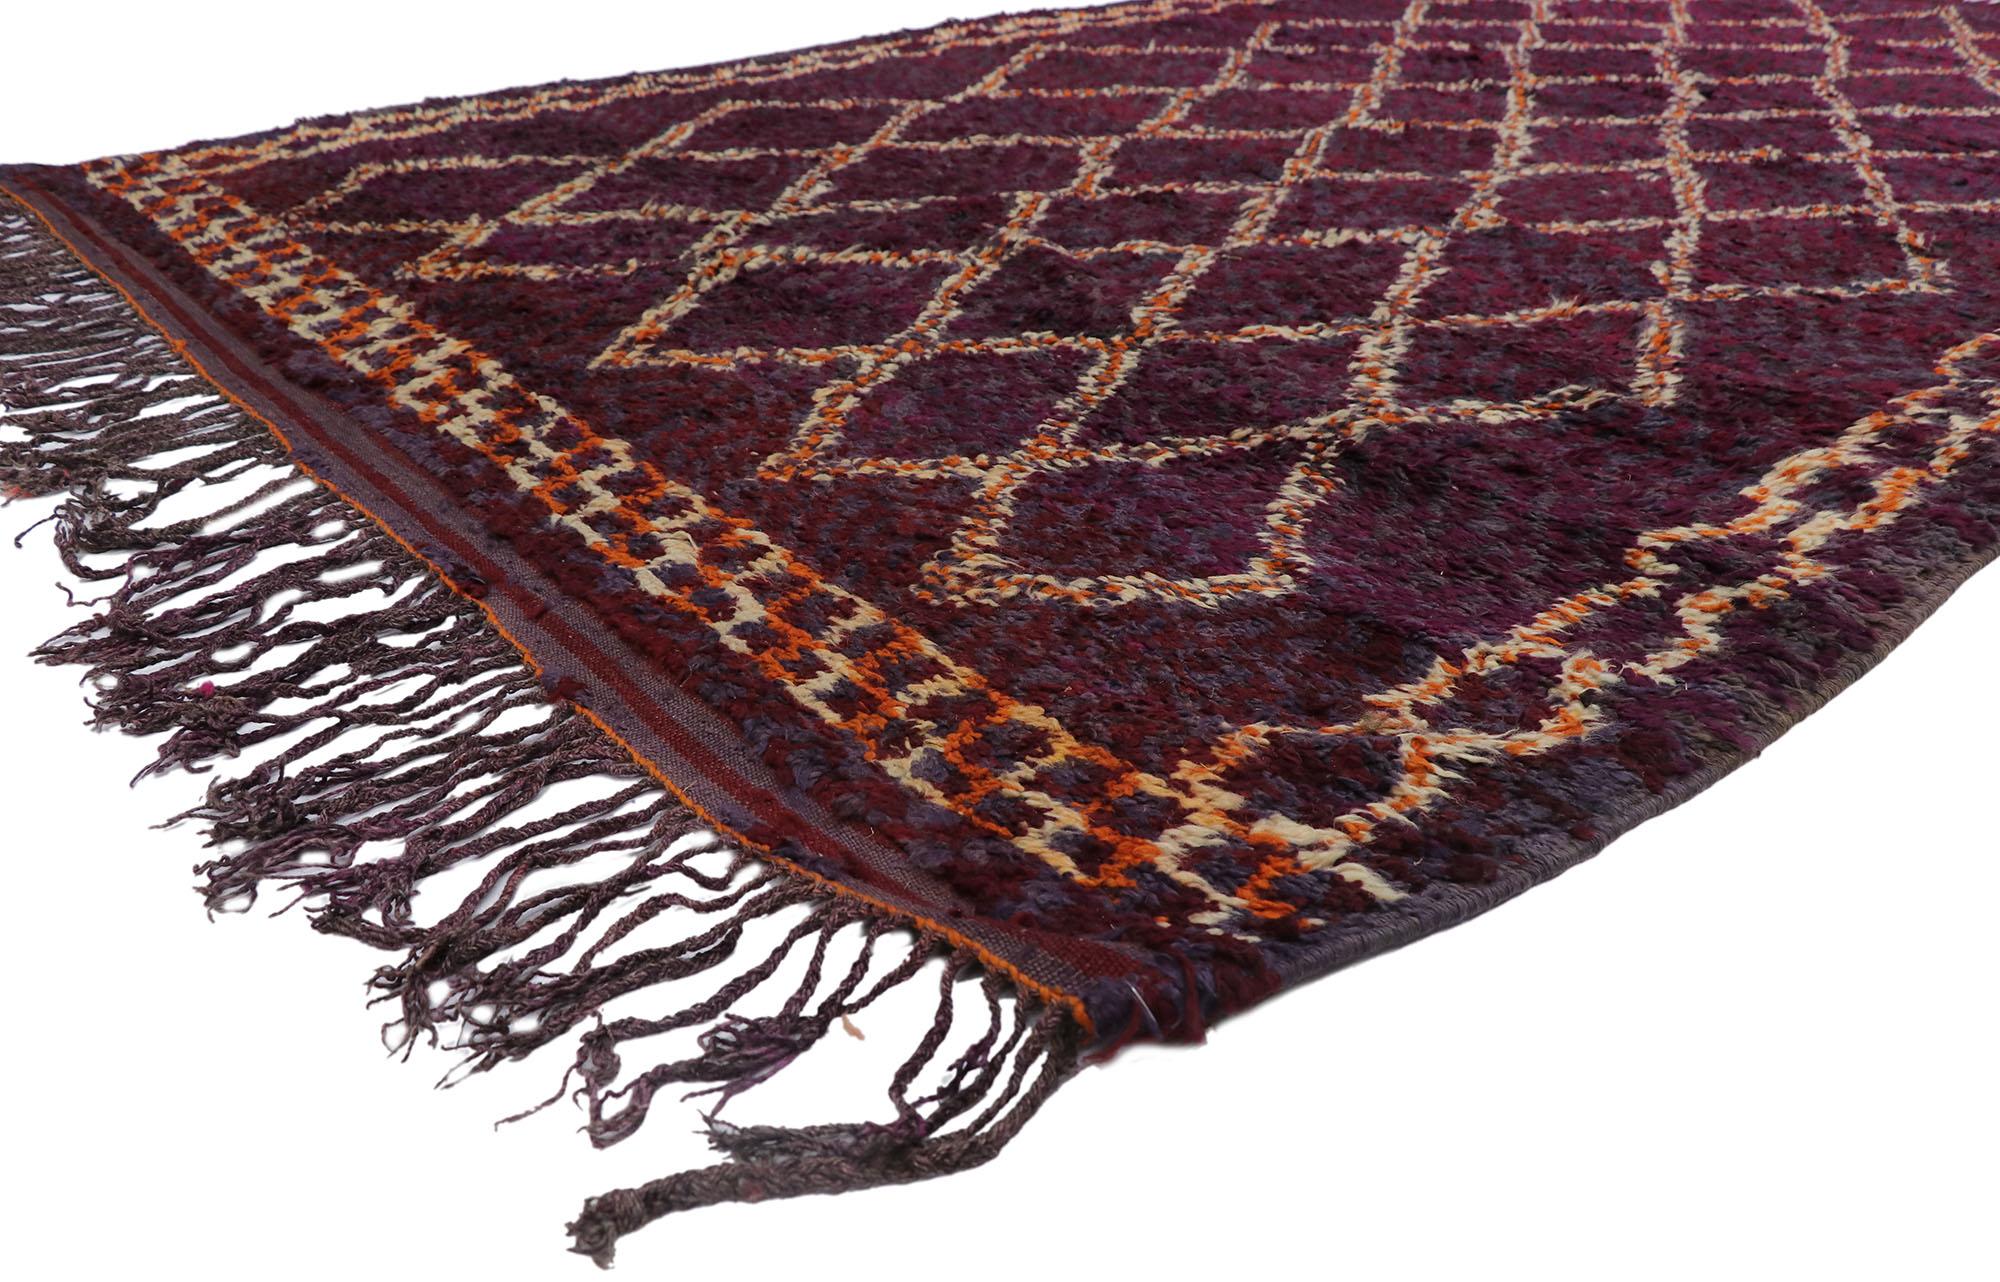 21515 Vintage Berber Beni M'Guild Marokkanischer Teppich mit böhmischem Stil 07'00 x 11'03. Dieser handgeknüpfte marokkanische Berberteppich Beni M'Guild aus Wolle mit seinem ausdrucksstarken Stammesmuster, seinen unglaublichen Details und seiner